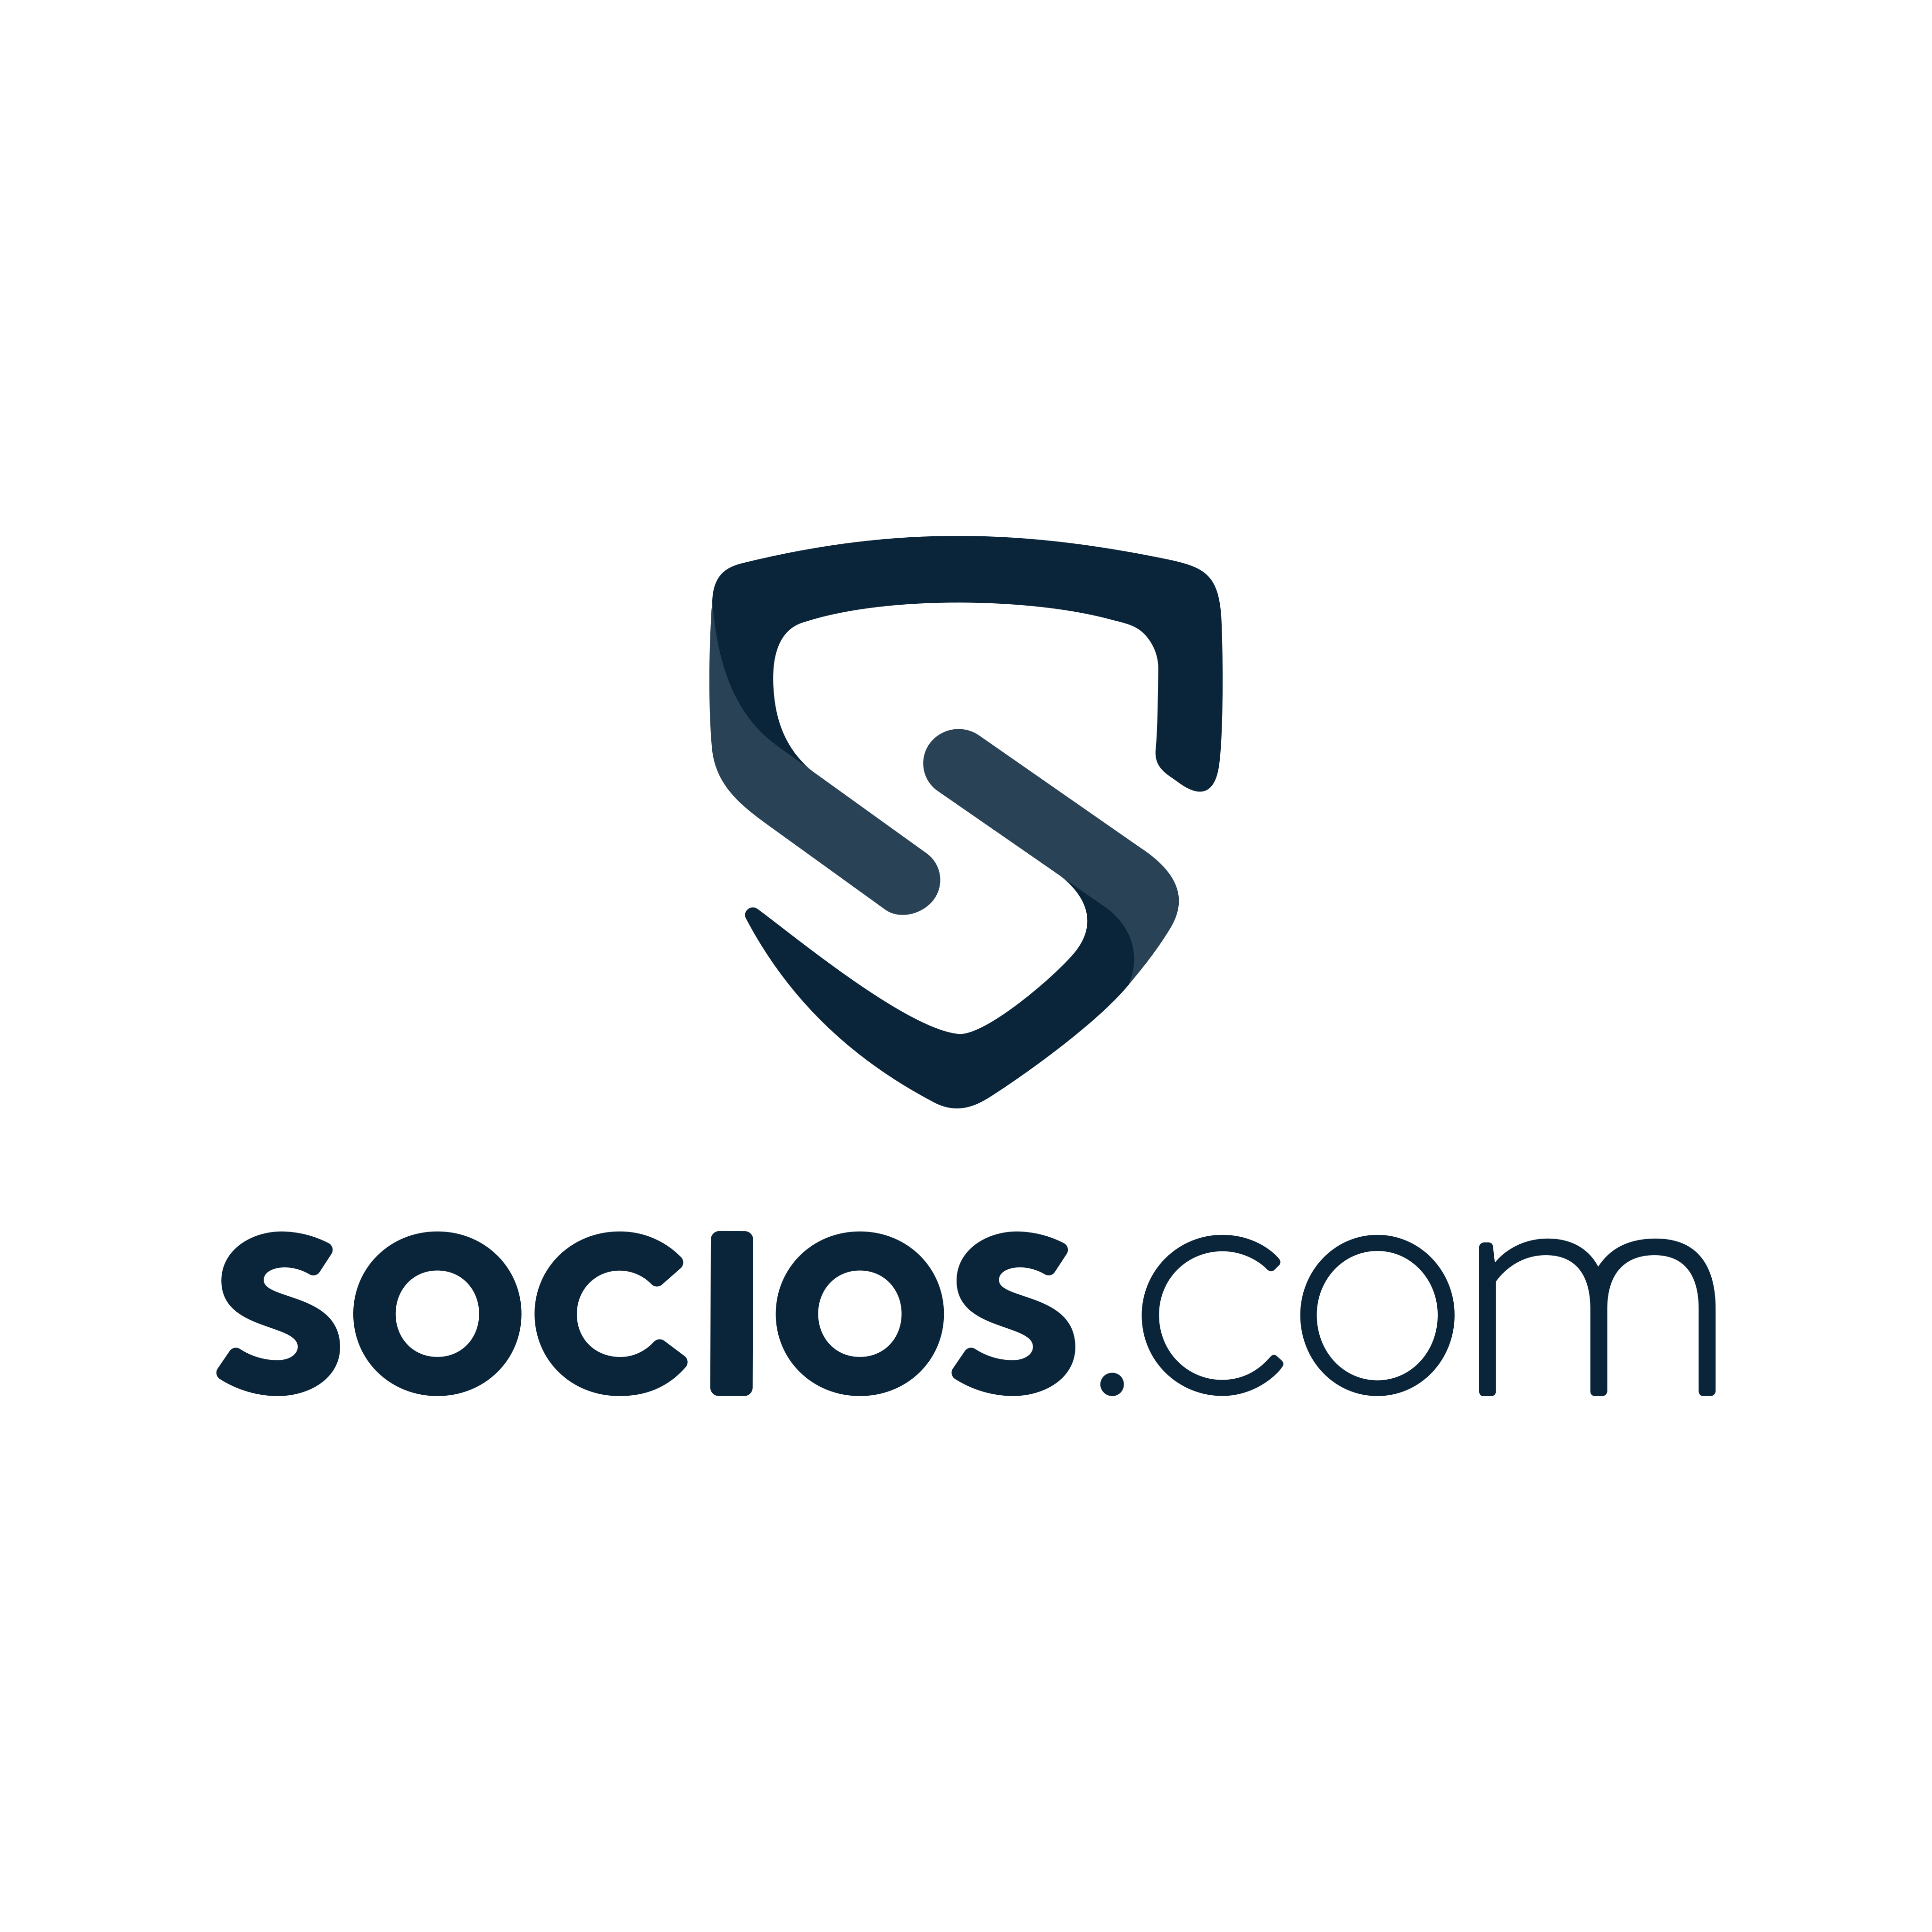 socios com logo 0 - Socios.com Logo